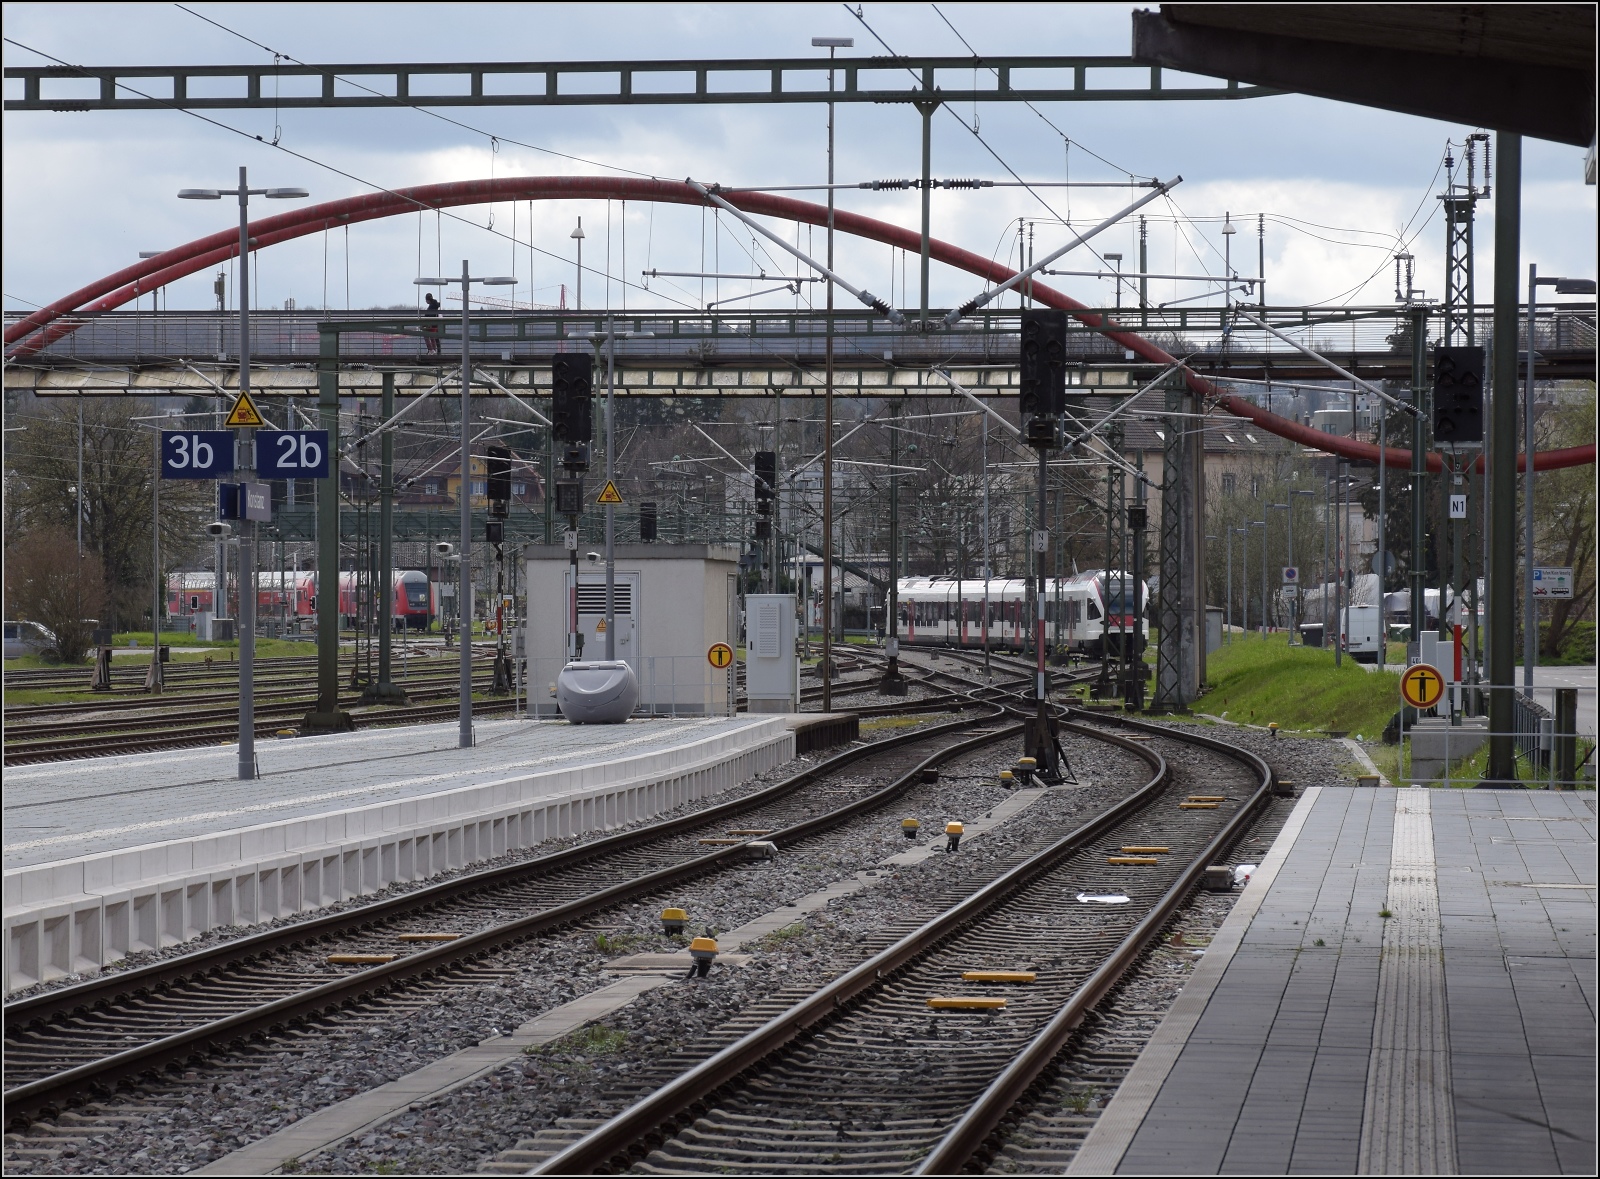 Heute streiken mal nicht Fahrzeuge, Weichen oder Signale, sondern die Mitarbeiter.

Die Signale werden allerdings heute bestreikt... Bahnhof Konstanz Richtung Sden. Mrz 2023.